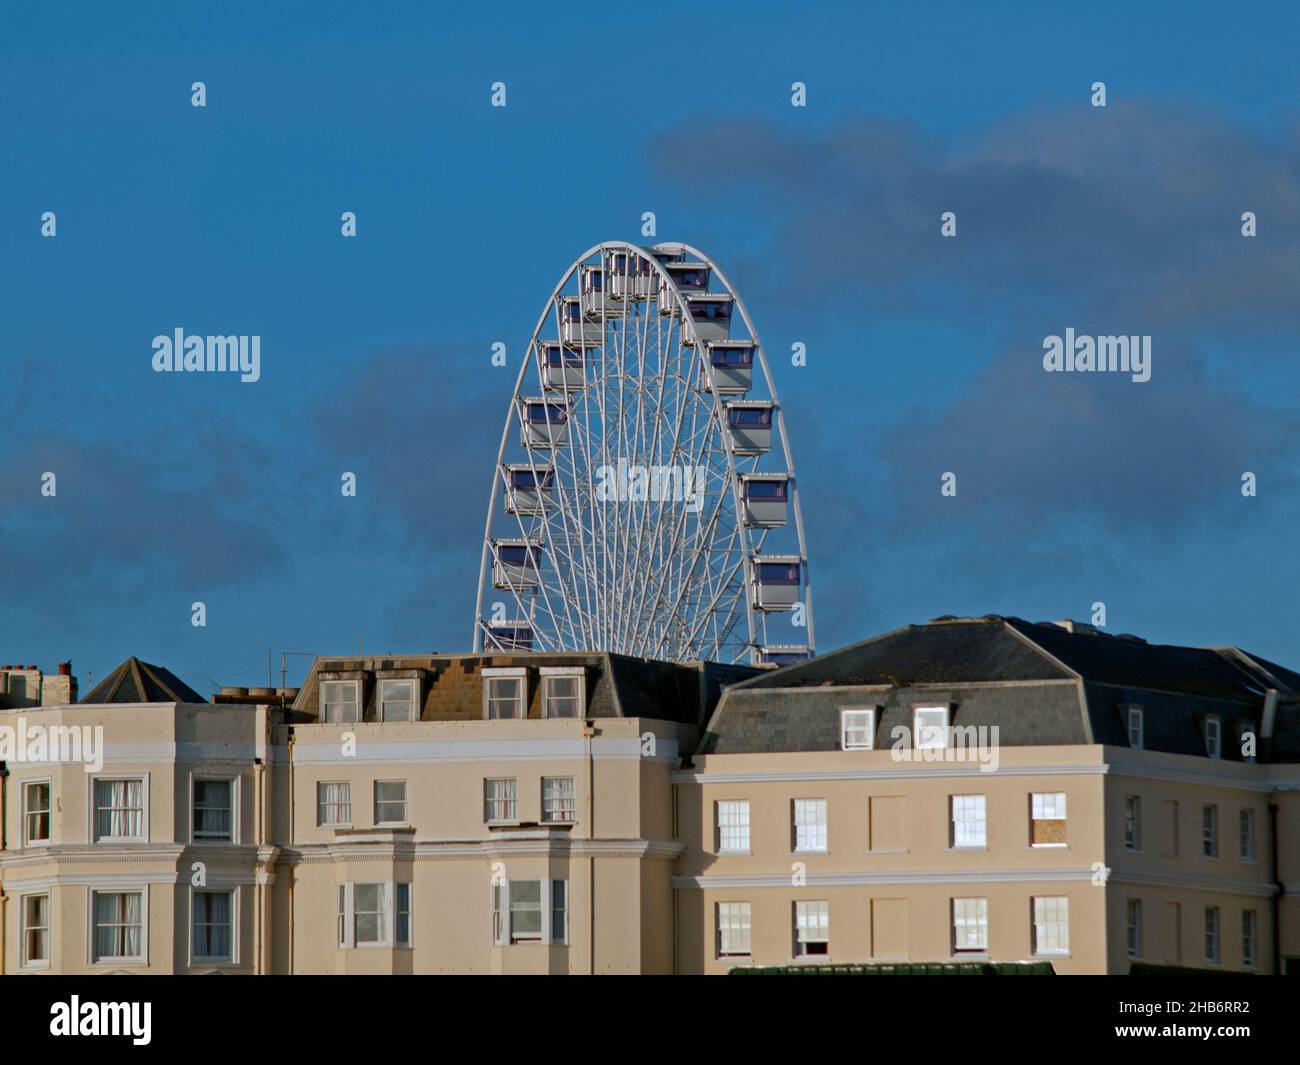 A Ferris wheel in Brighton, England Stock Photo